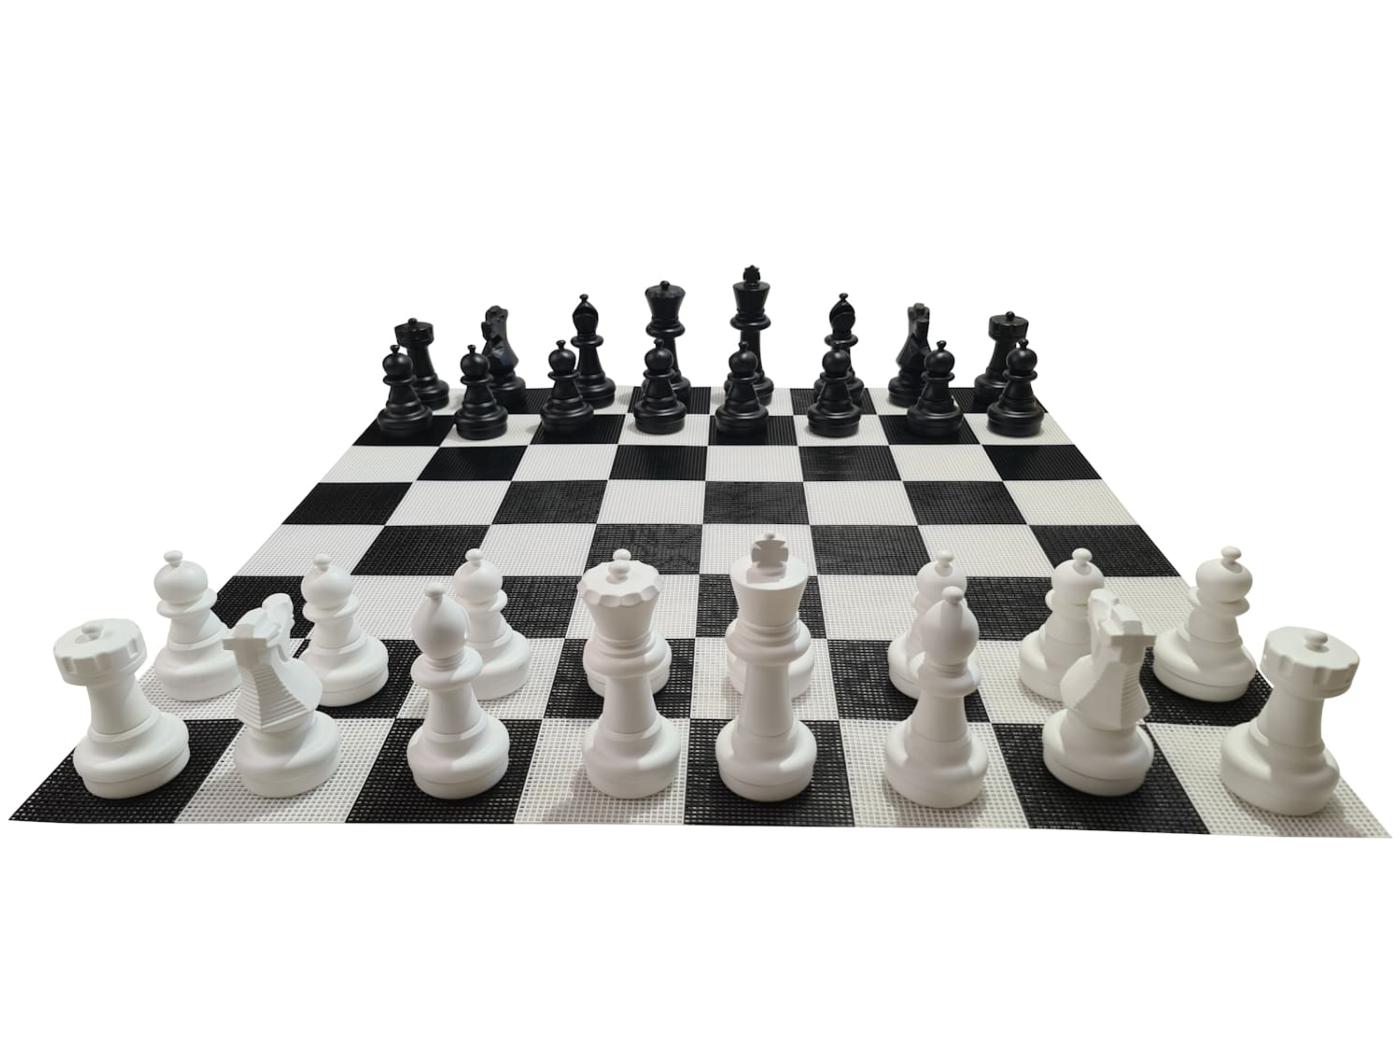 Jogo de xadrez gigante com tabuleiro rígido gigante incluido jogo completo com tabuleiro